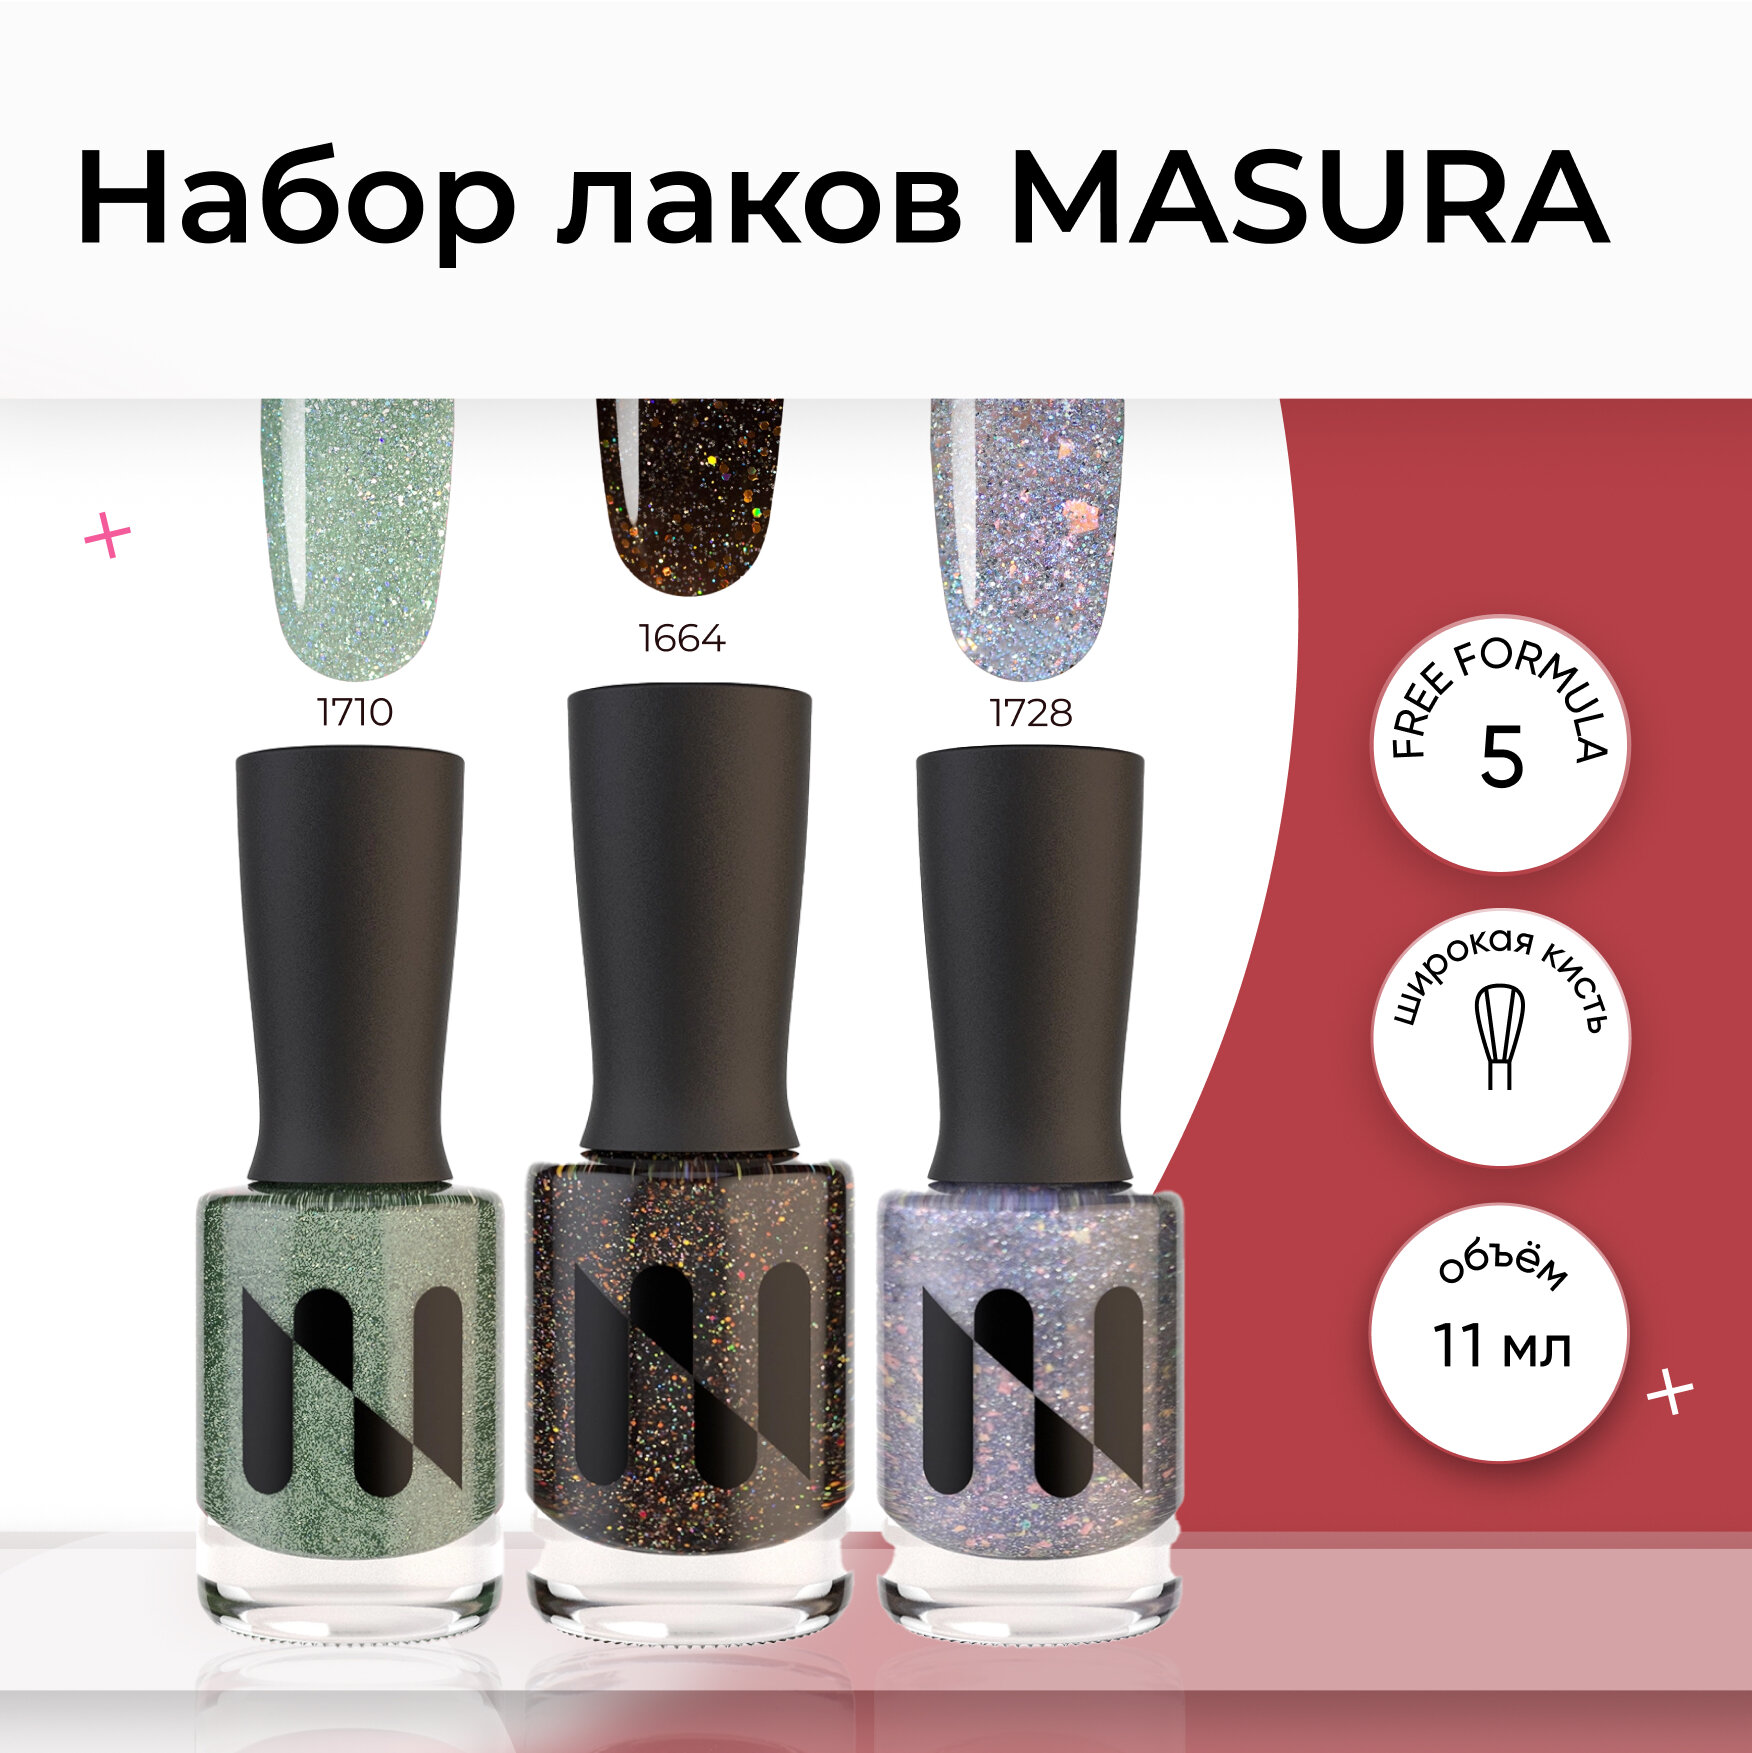 Набор лаков-эффектов для ногтей MASURA (1664*1710*1728), 11 мл*3 шт